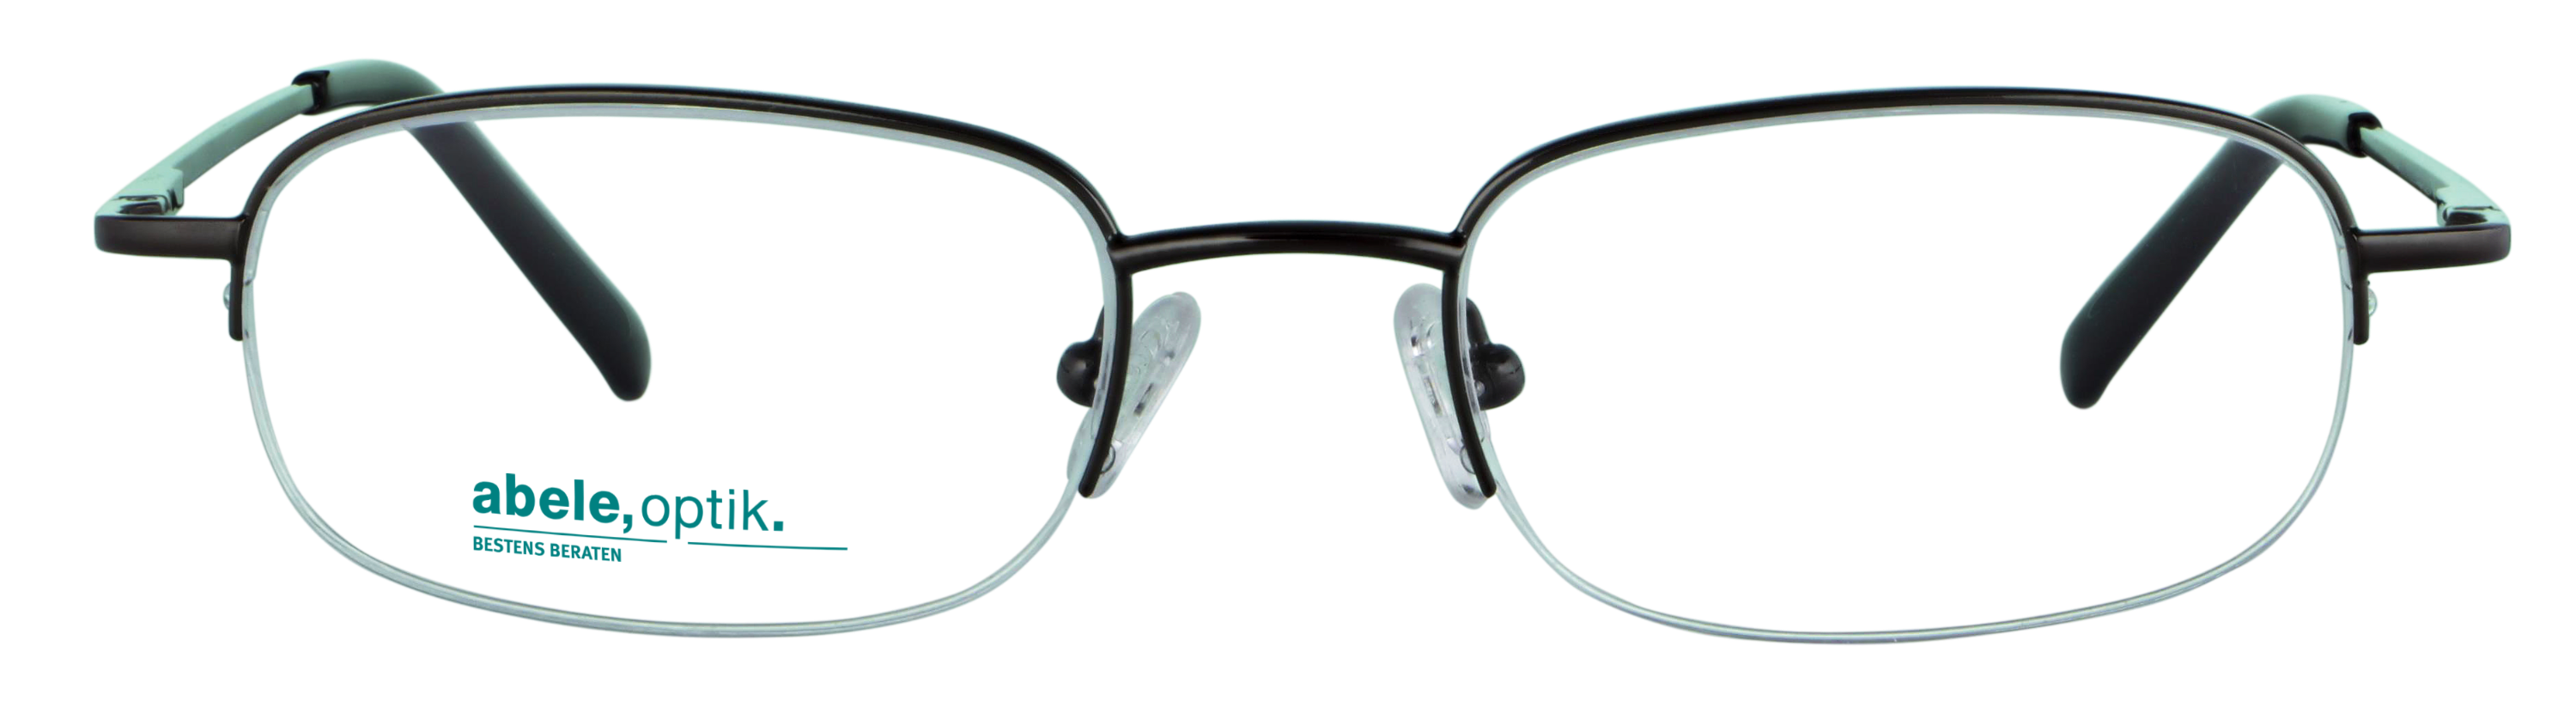 Das Bild zeigt die Korrektionsbrille 142081 von der Marke Abele Optik in gun.